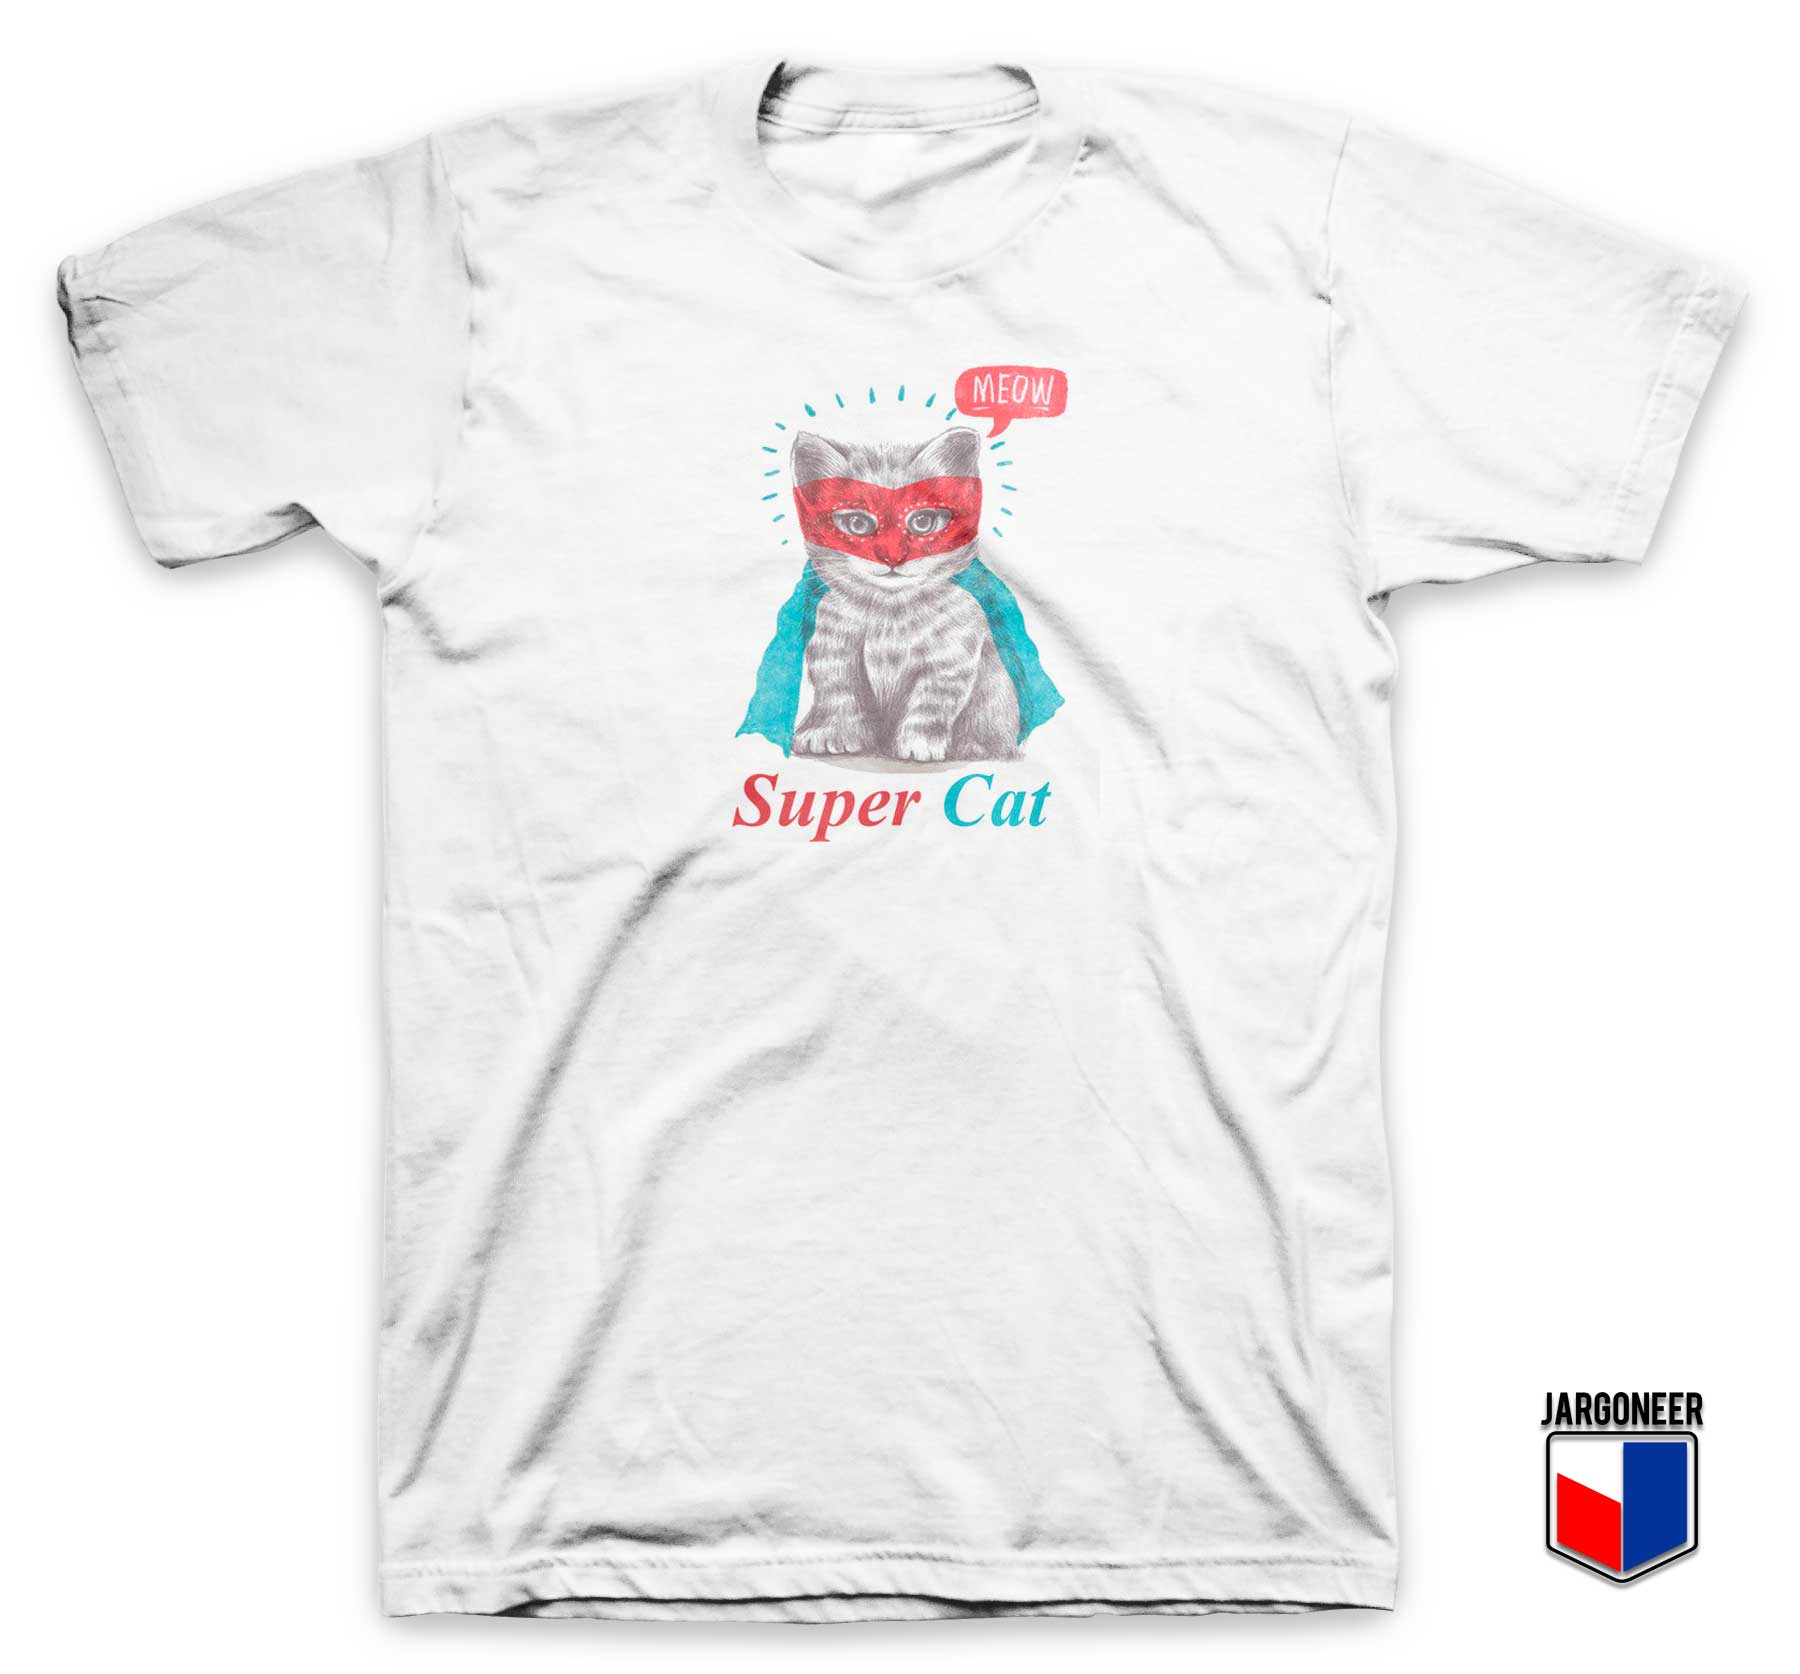 Meow Super Cat T Shirt - Shop Unique Graphic Cool Shirt Designs